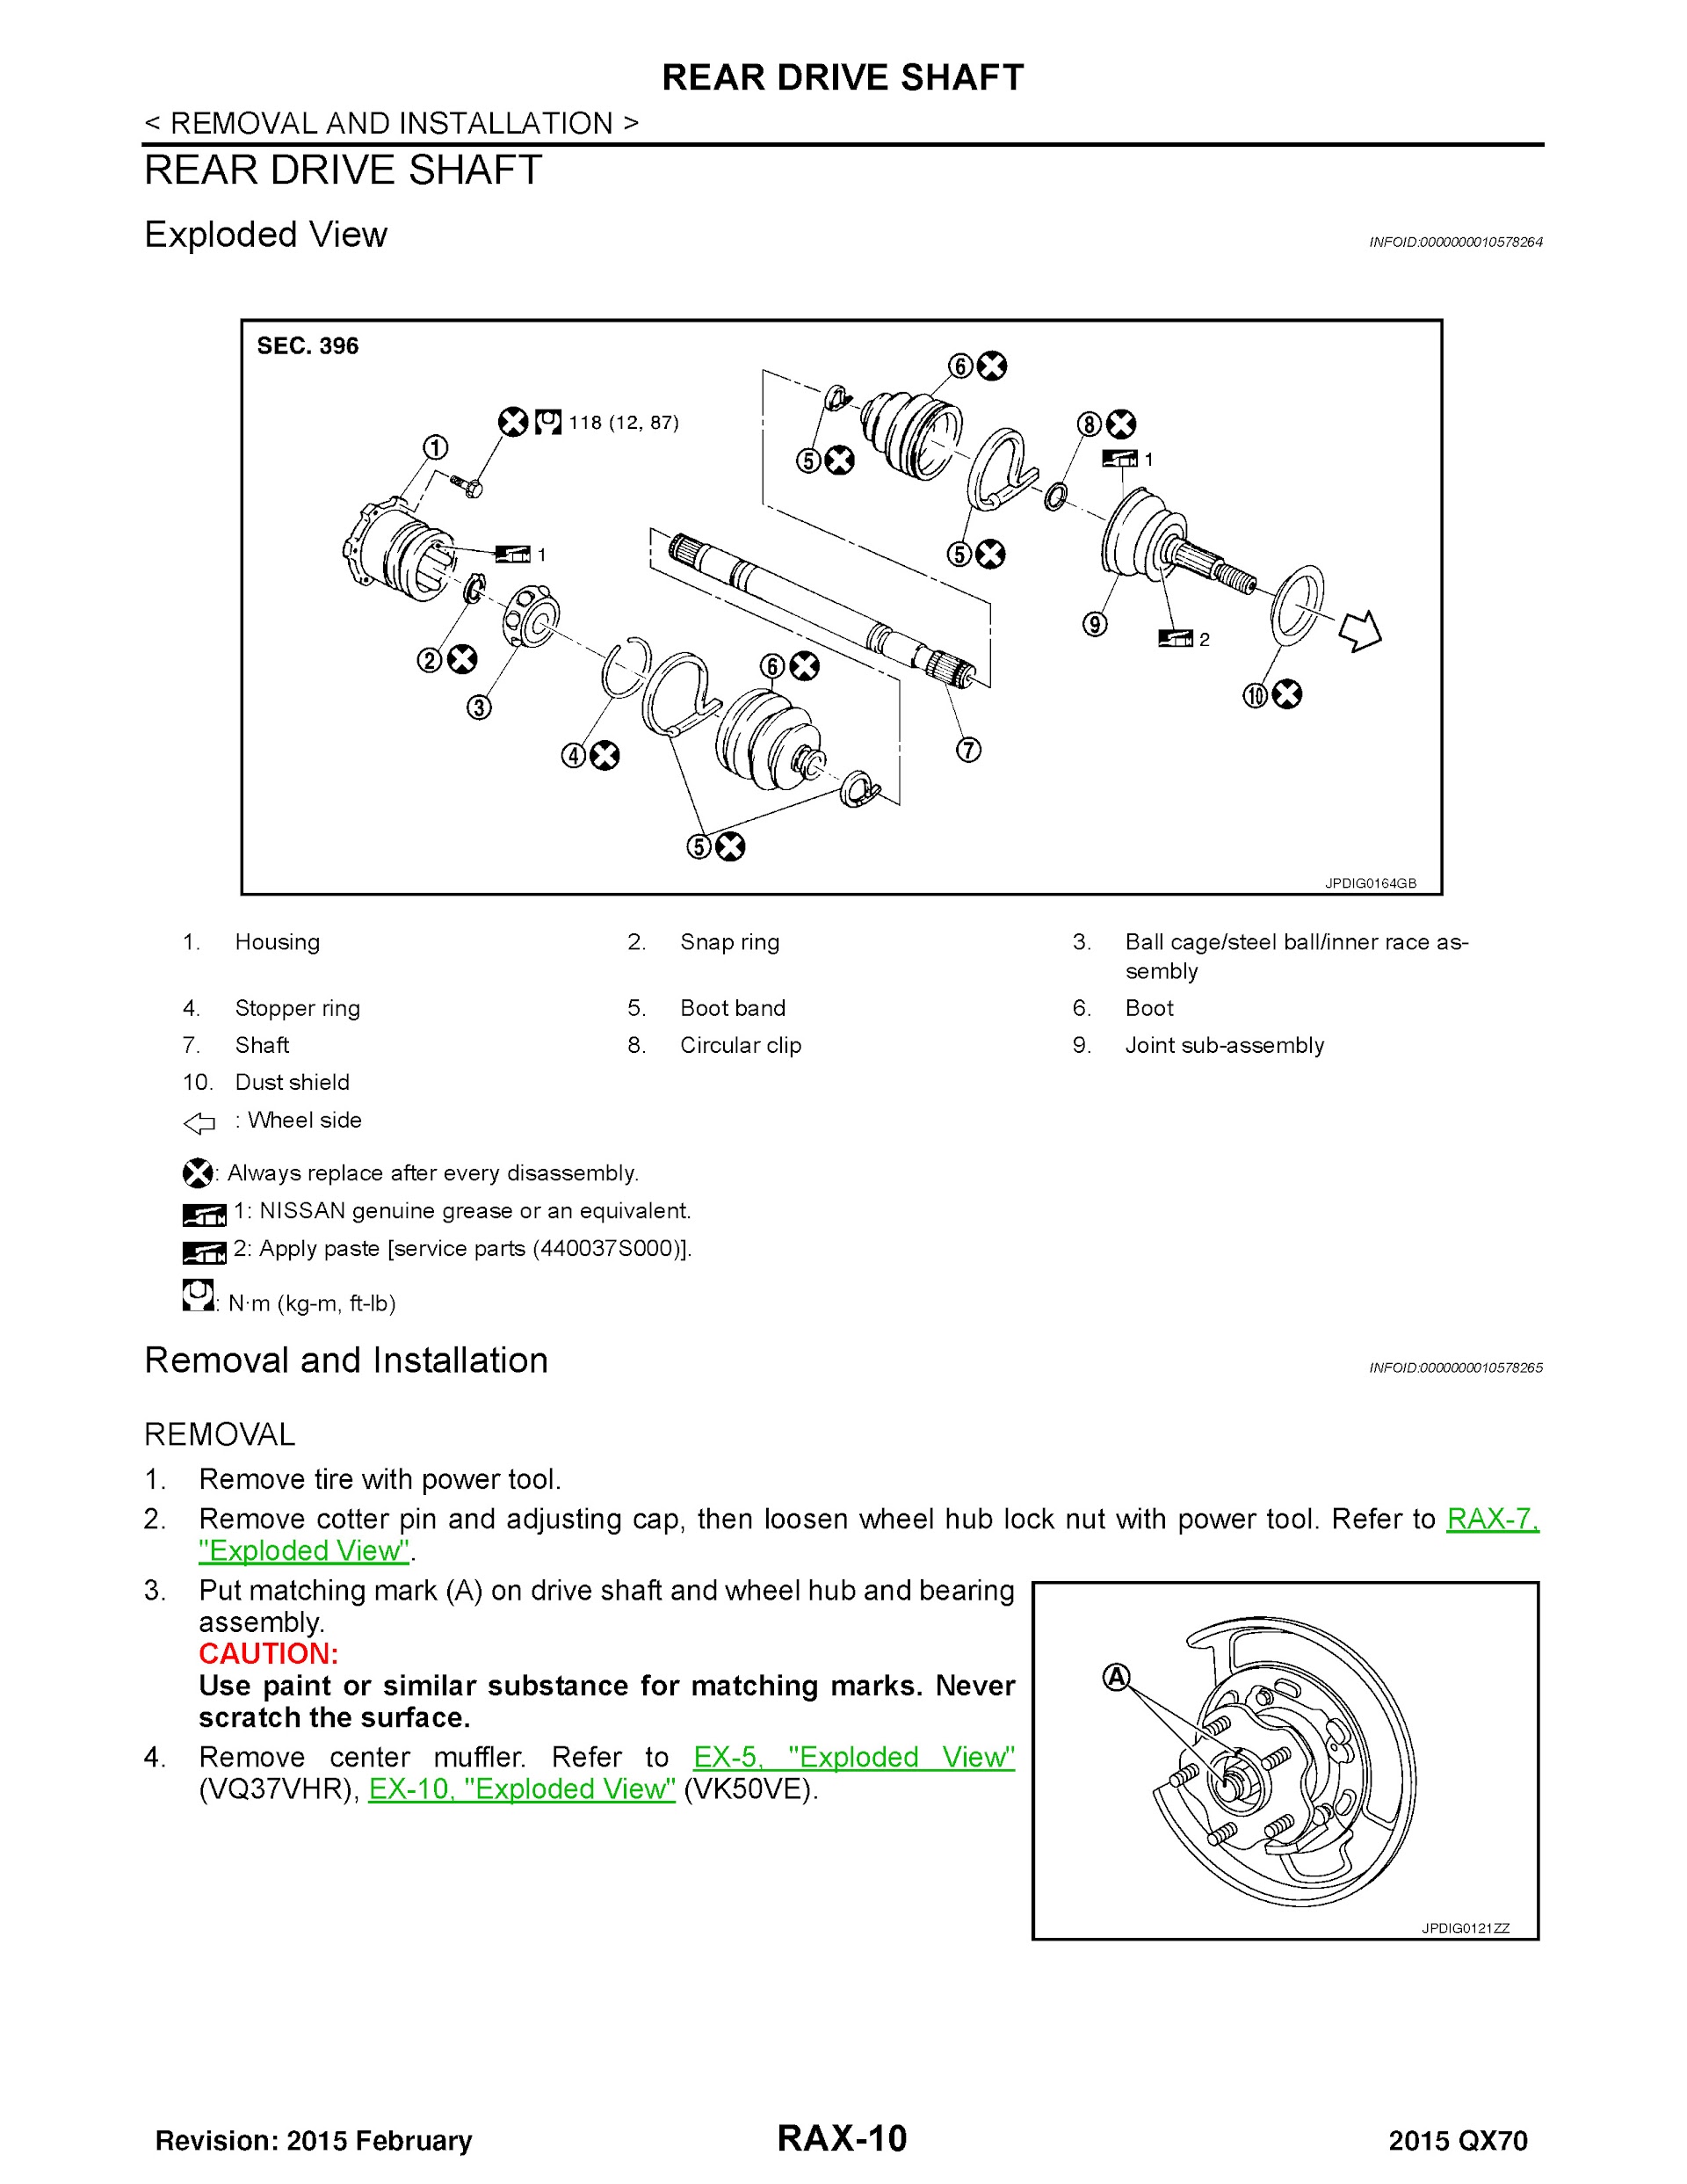 2015 Infiniti QX70 Repair Manual, Rear Drive Shaft